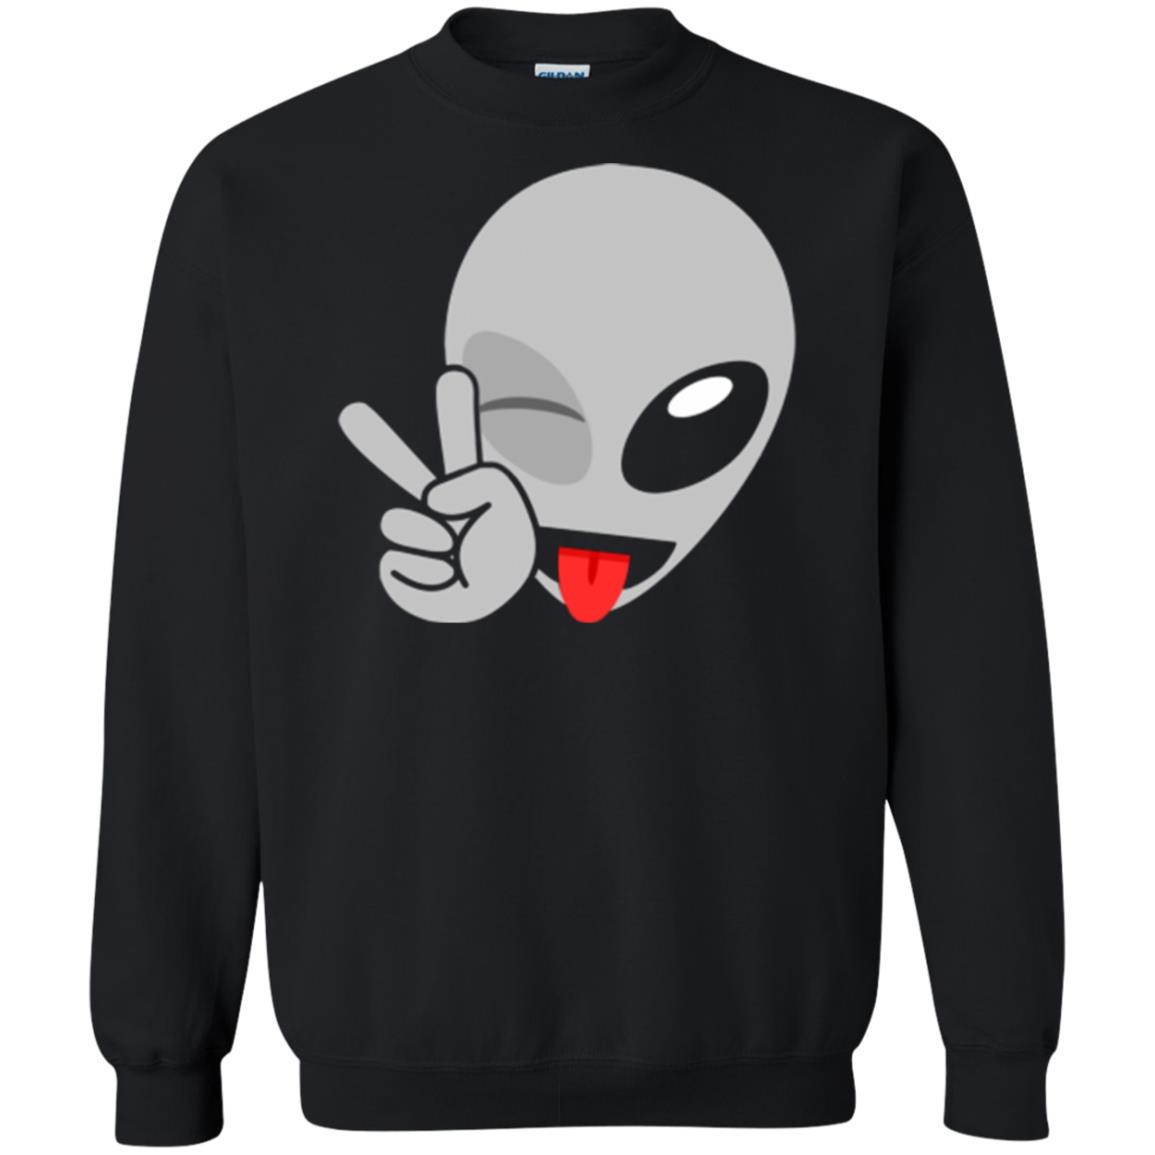 Alien Emoji Shirt - 10% Off - FavorMerch